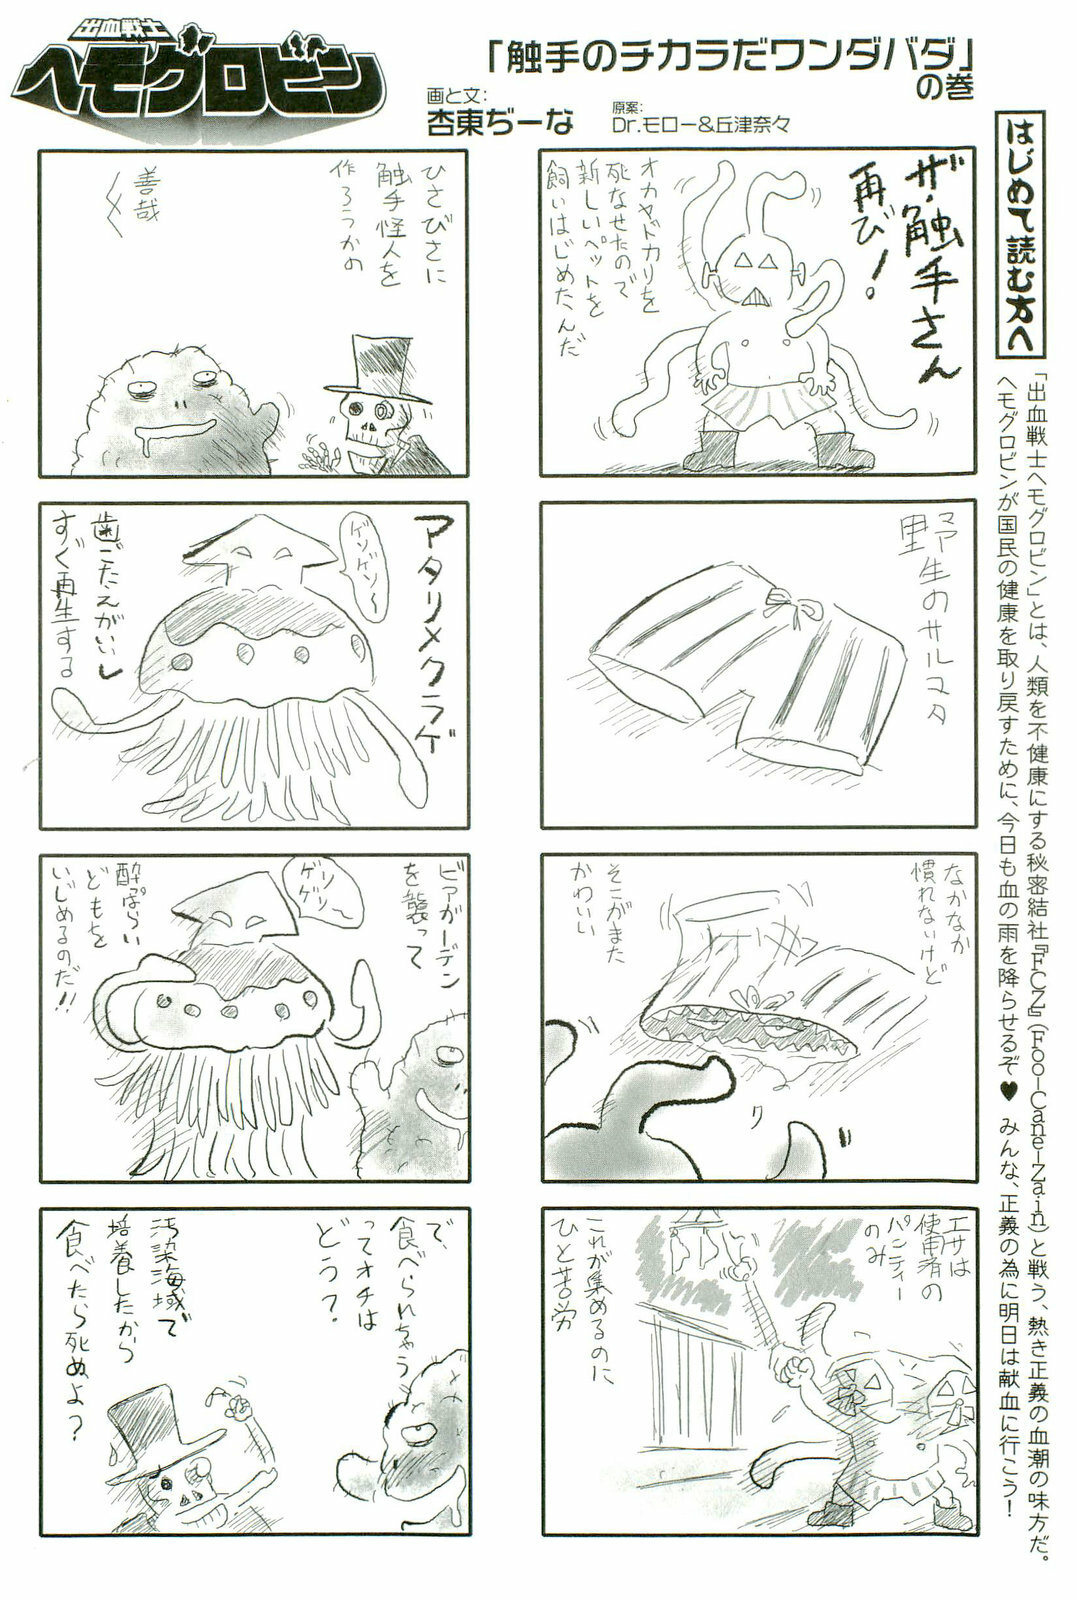 [Anthology] Shokushu! Etsuraku no Utage 2 page 171 full